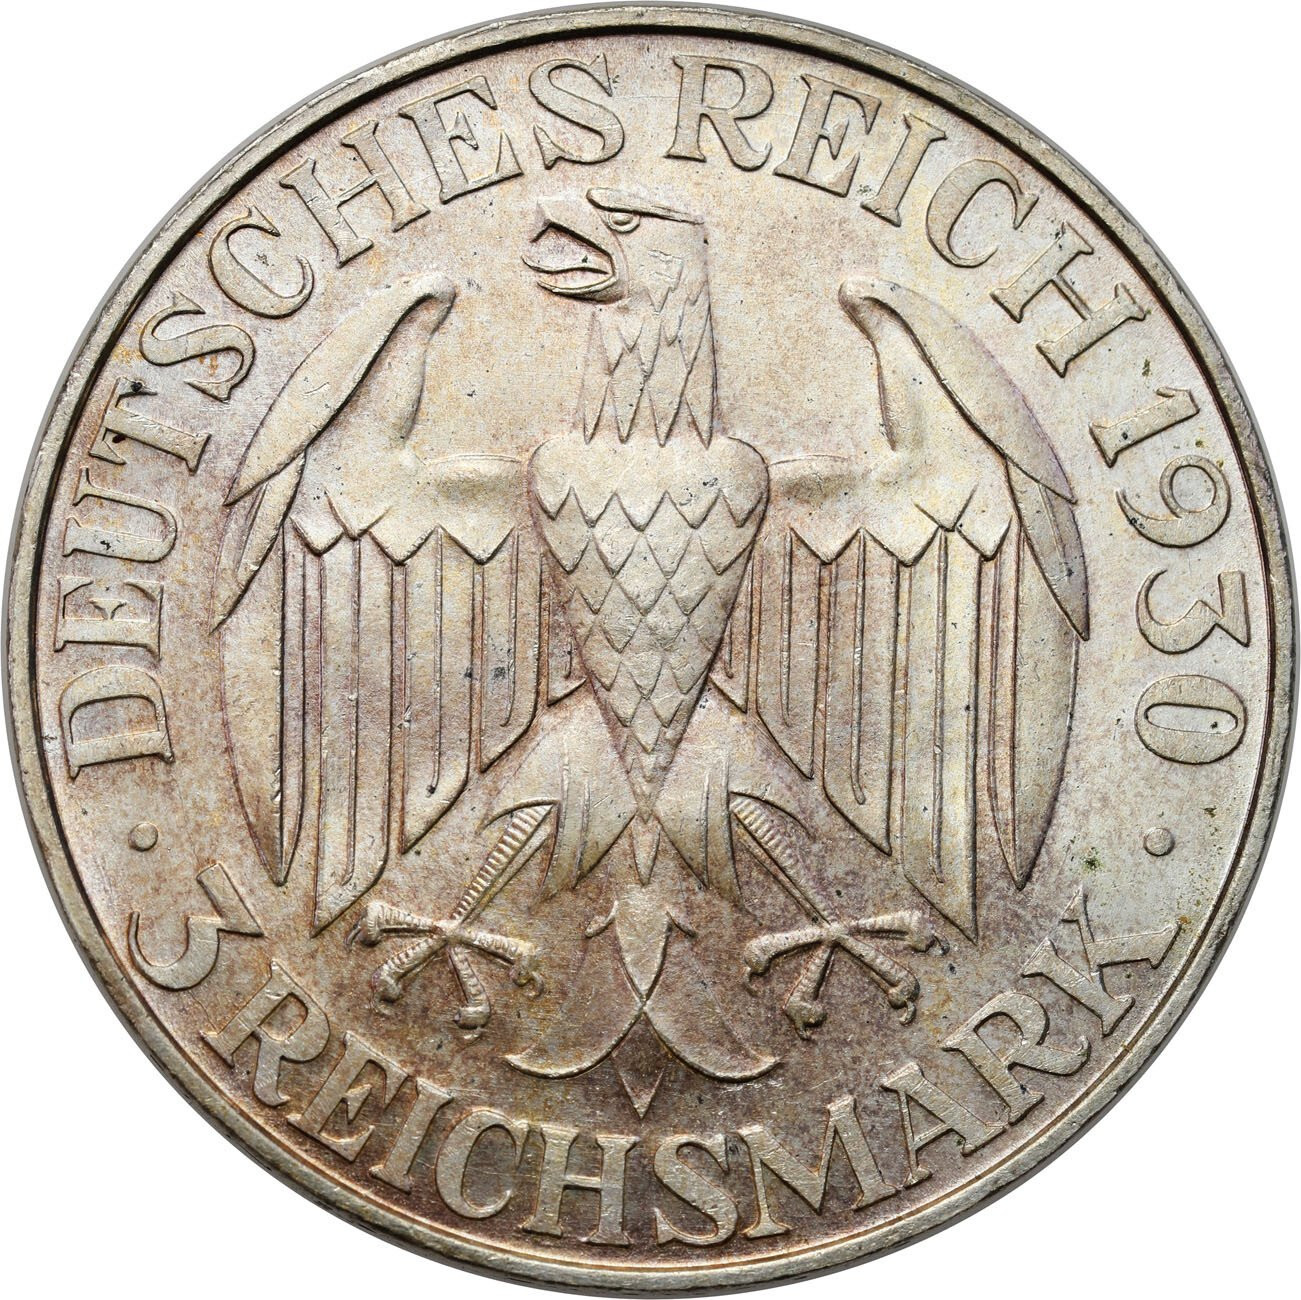 Niemcy, Republika Weimarska. 3 marki 1930 J, Hamburg – PIĘKNY